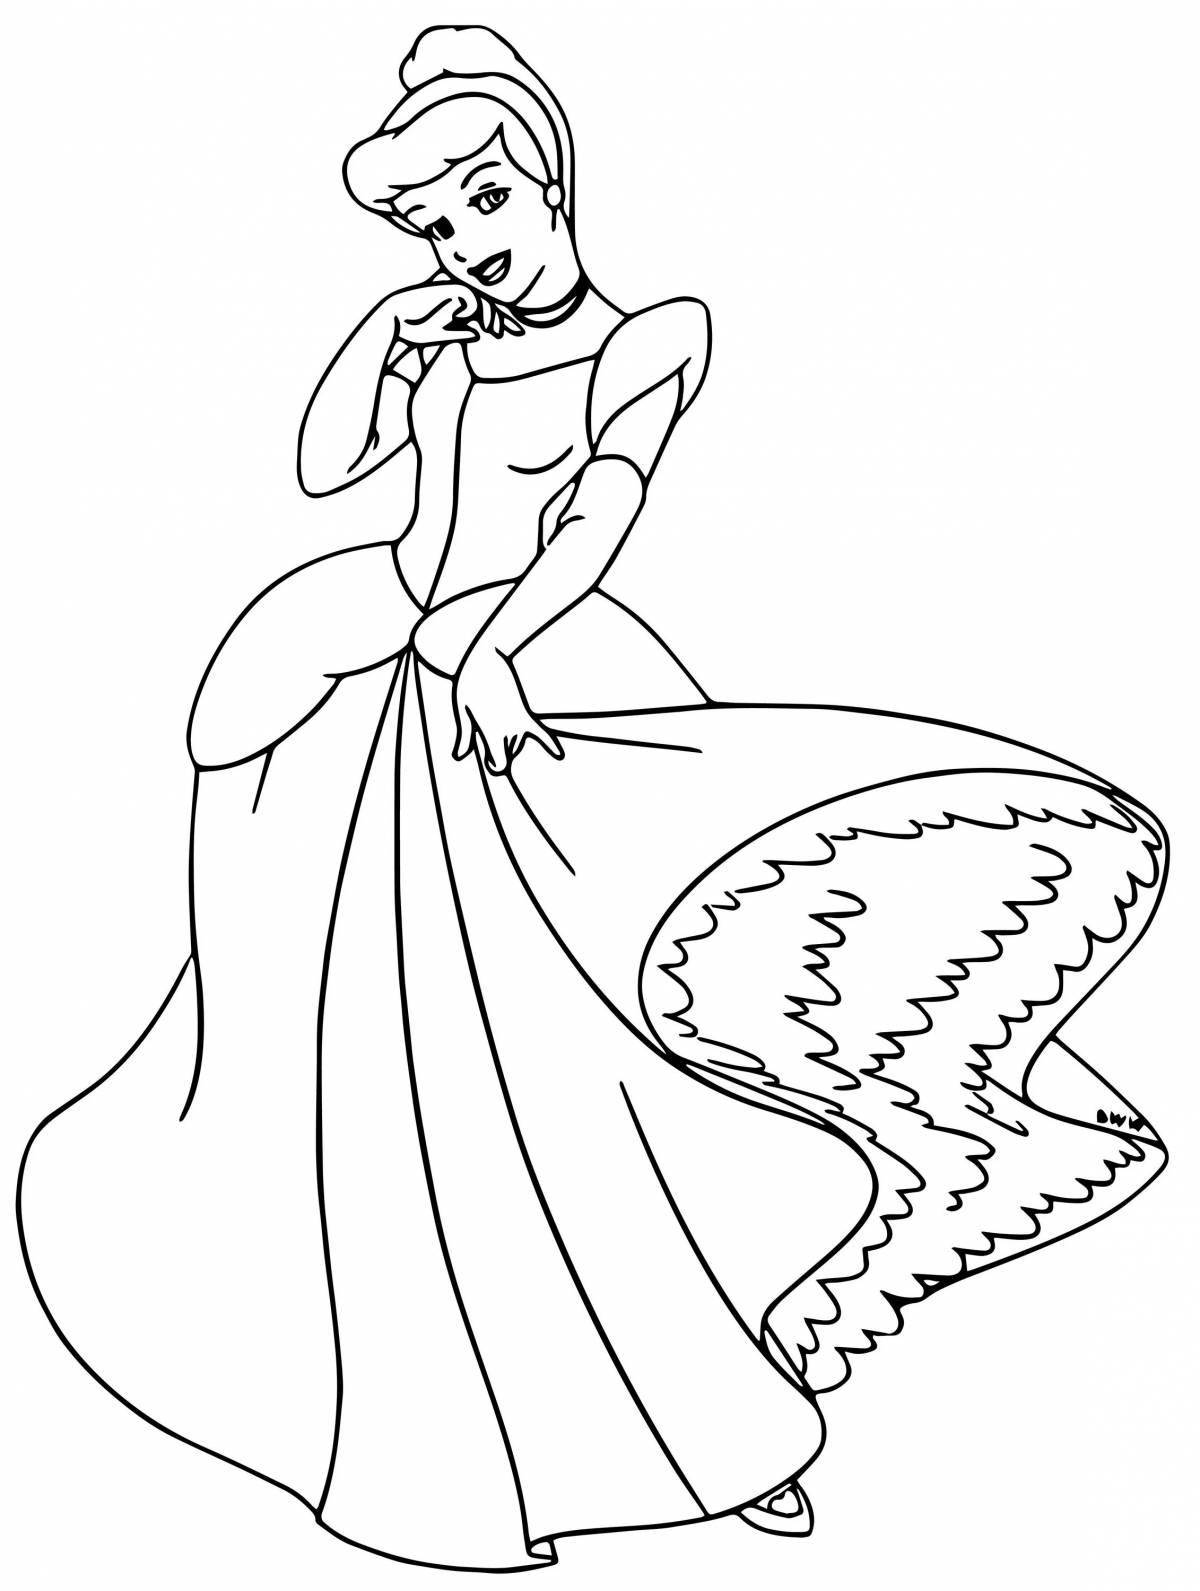 Coloring page happy princess cinderella